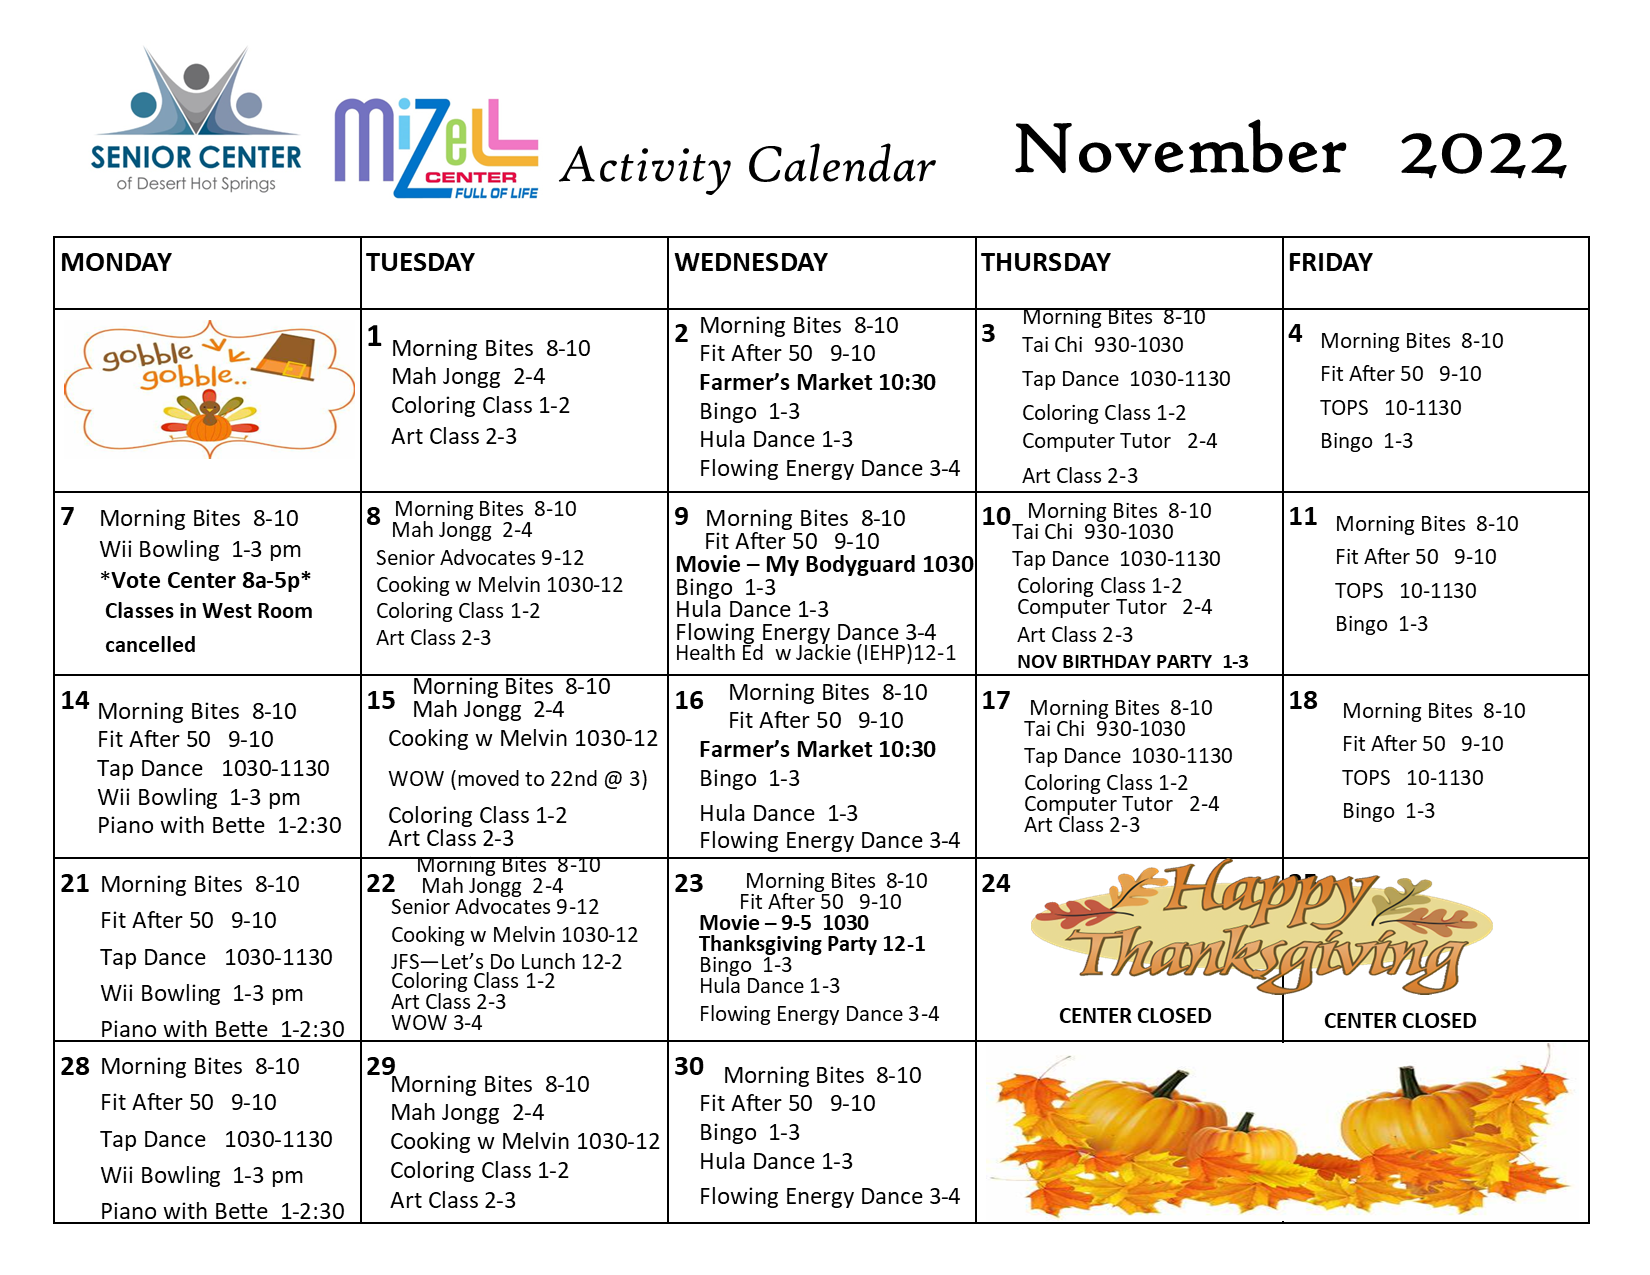 Senior Center Activity Calendar November 2022 Desert Hot Springs, CA